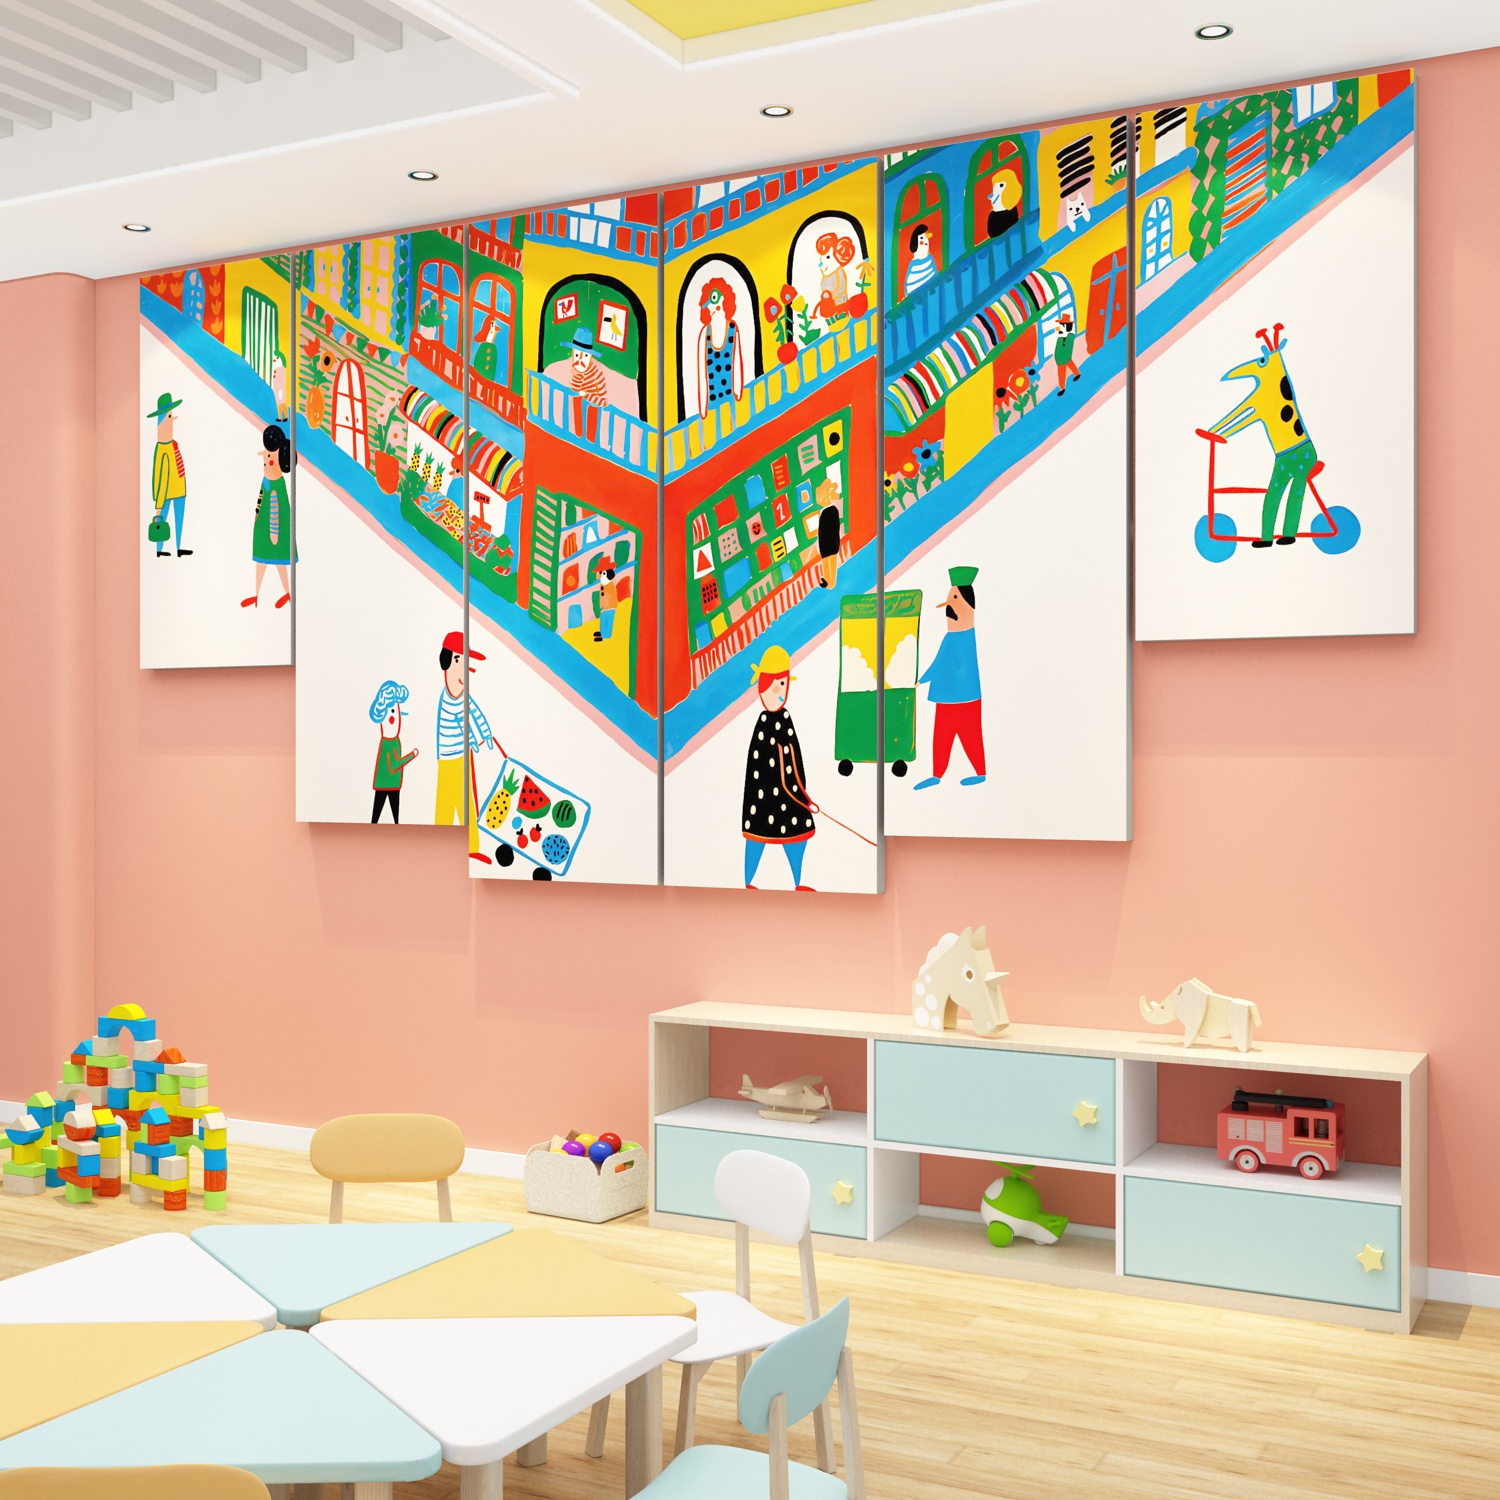 午托管班中心幼儿园环创主题墙成品布置前台背景形象文化墙面贴画